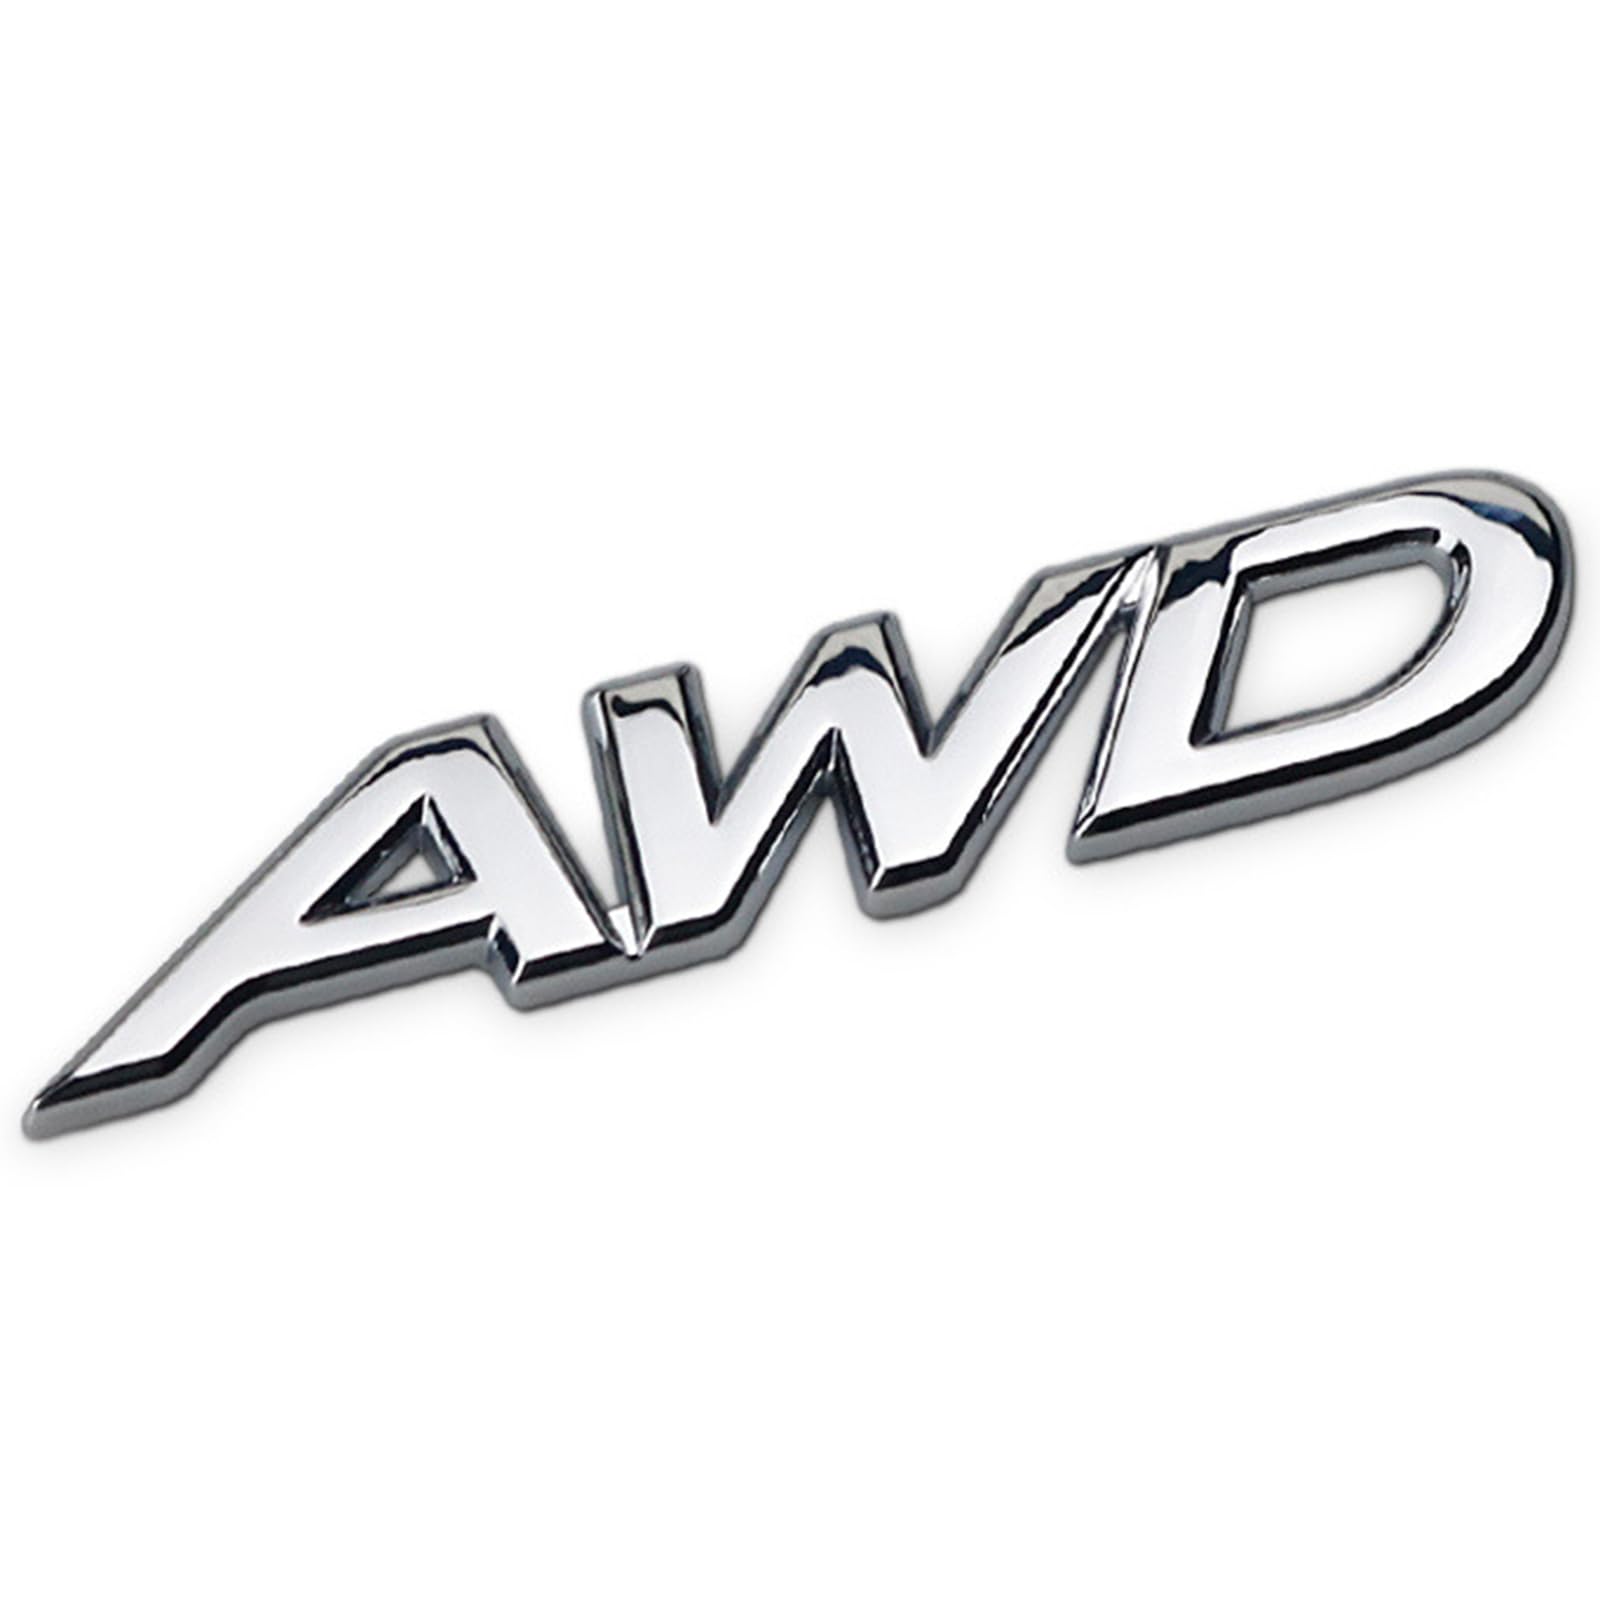 3D Metall Auto Aufkleber für 2.5 AWD, Selbstklebend Logo Emblem Badge Abzeichen für Heckklappe Kofferraum, Chrom Autoaufkleber zubehör,B von MOOWI